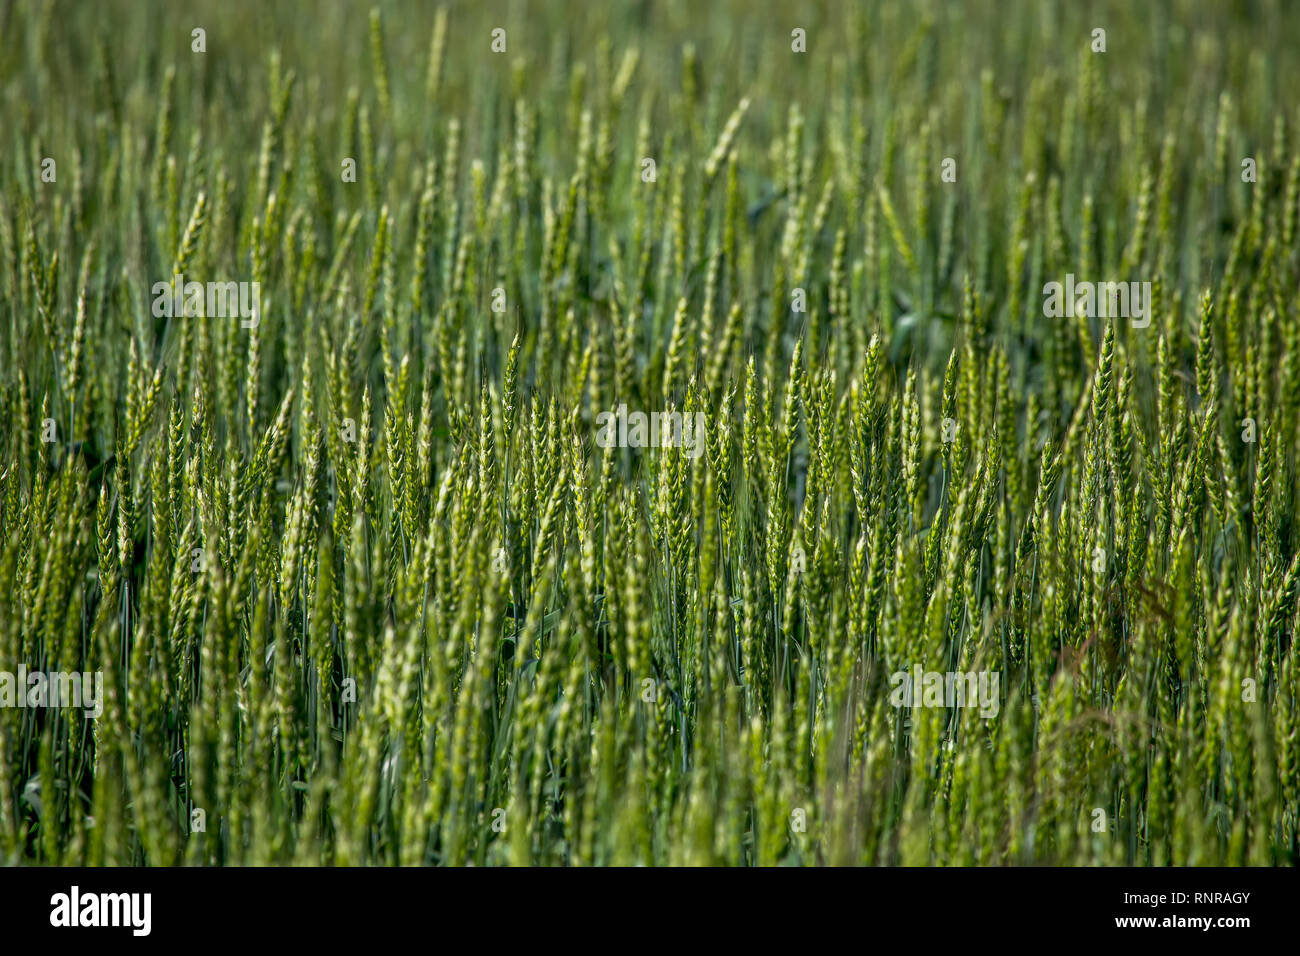 Background creato con una chiusura di un campo di cereali in Lettonia. Cereali utilizzati per i prodotti alimentari, frumento, mais, segale o. Foto Stock